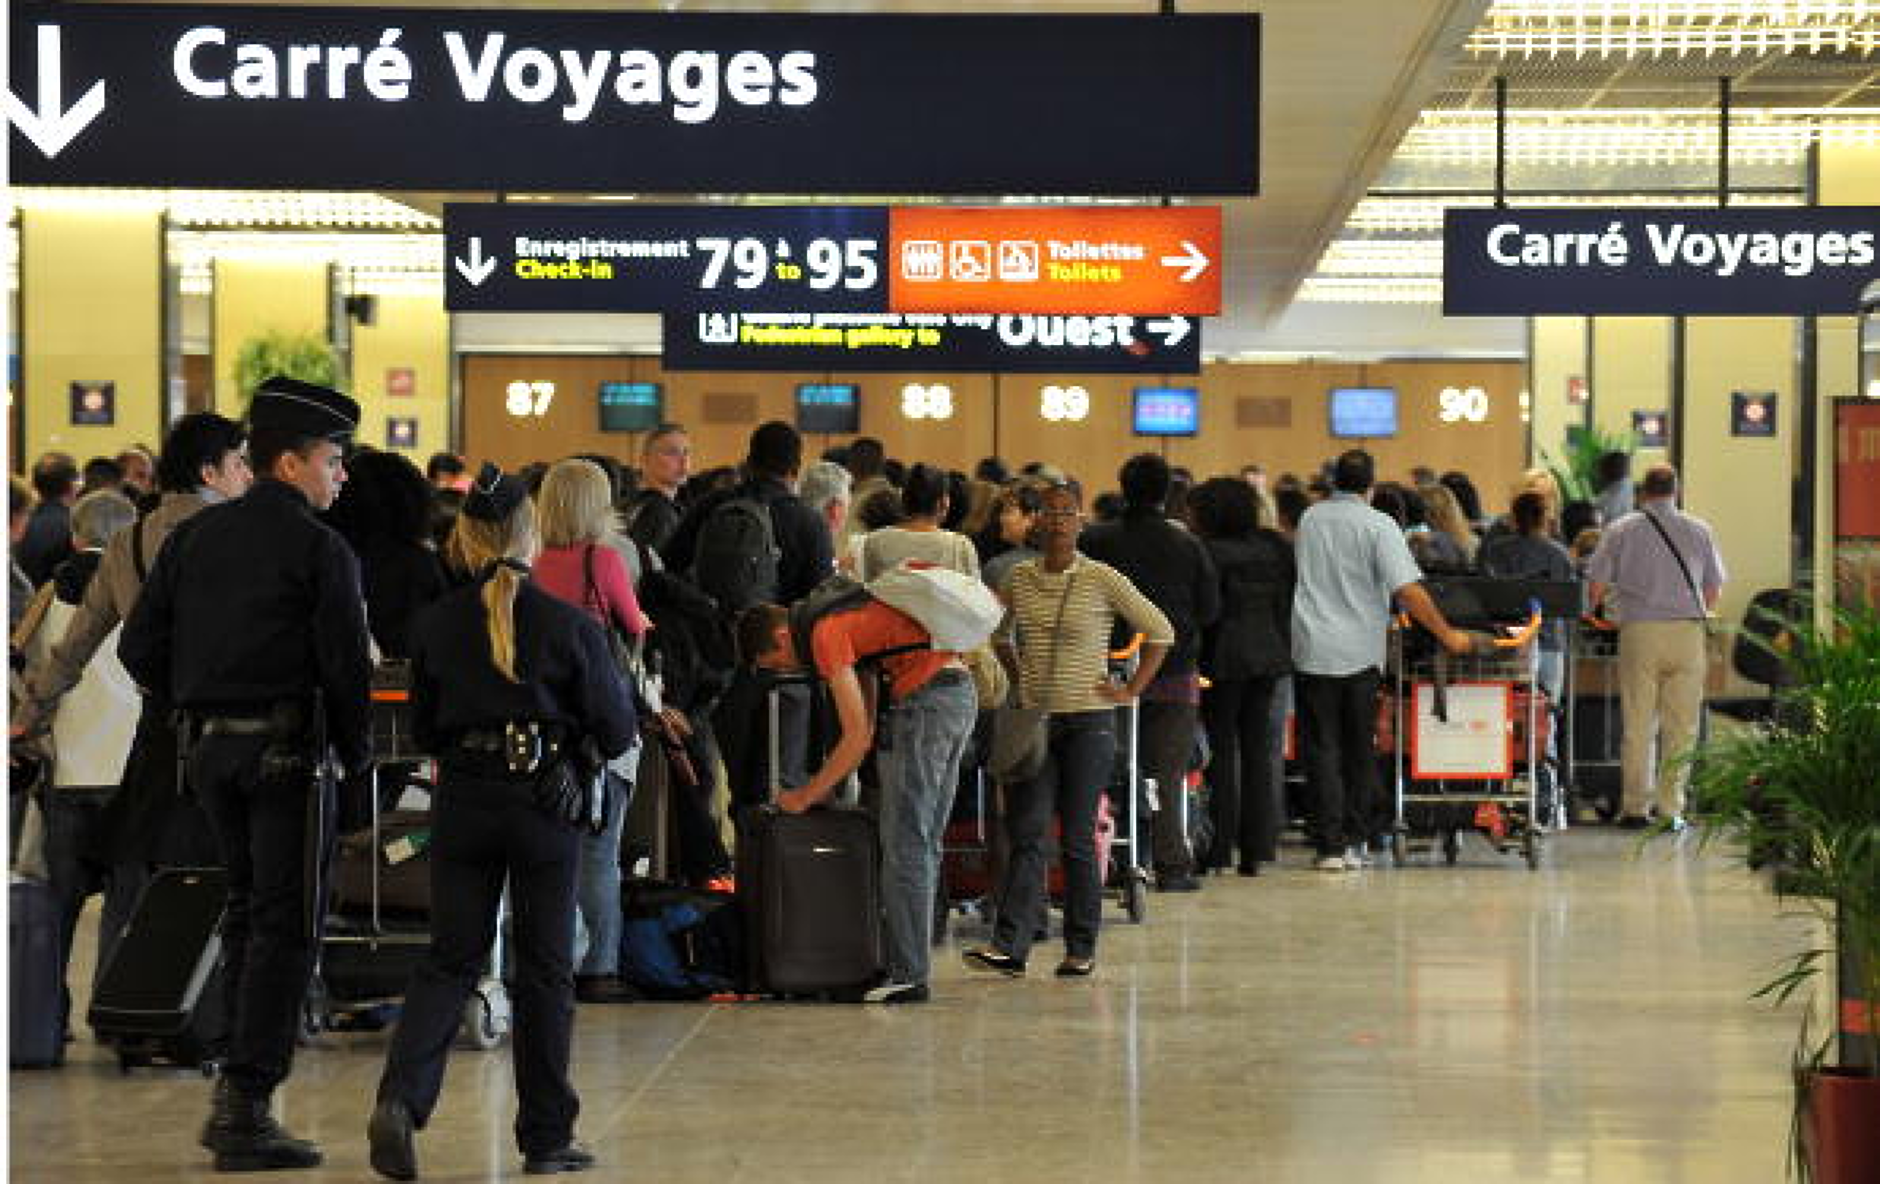 Служителите на летищния оператор в Париж обявяват стачка на 17 юли, дни преди Олимпийските игри